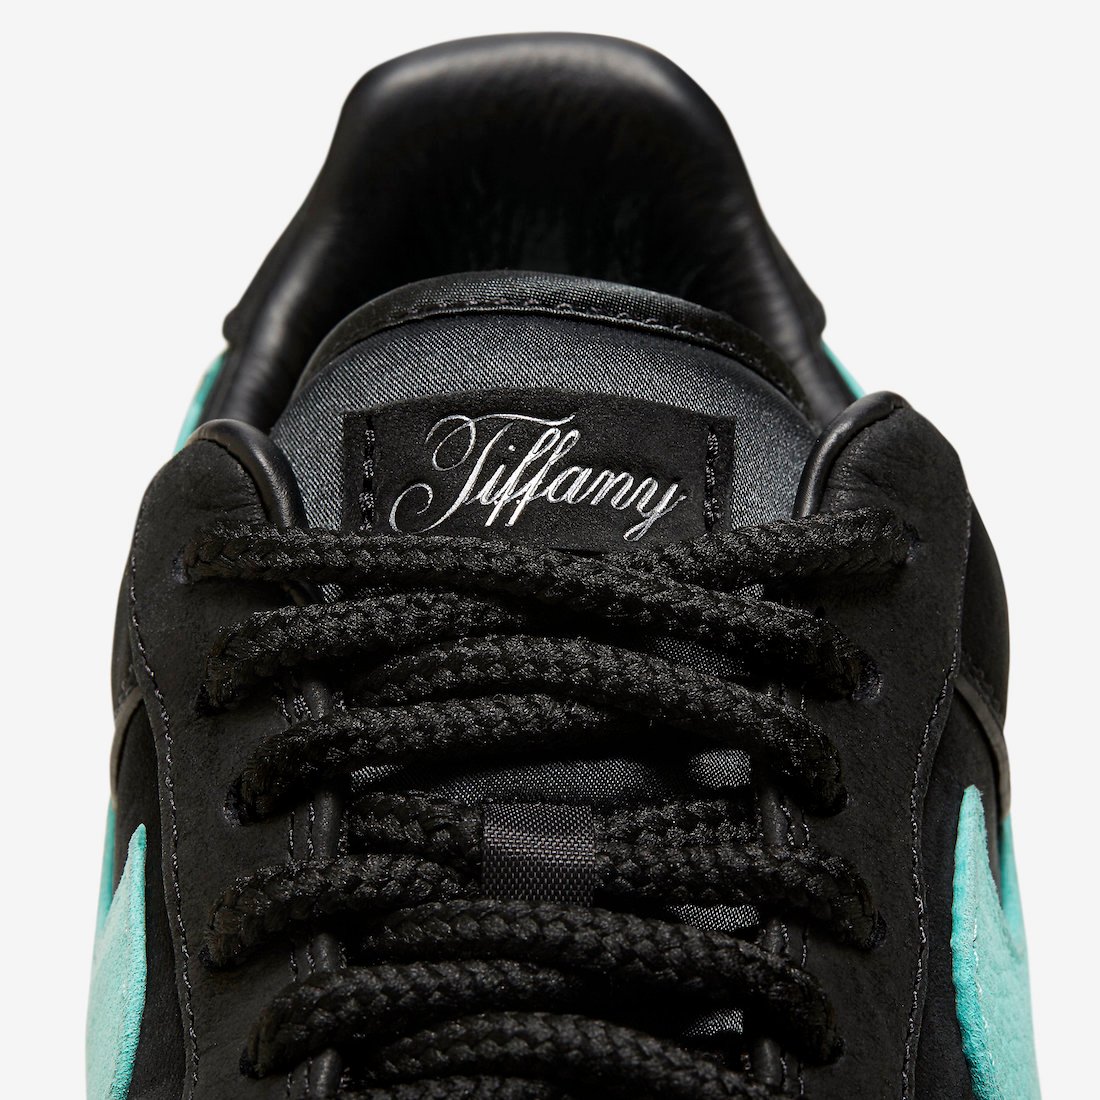 Tiffany Nike Air Force 1 Low DZ1382-001 Info Price